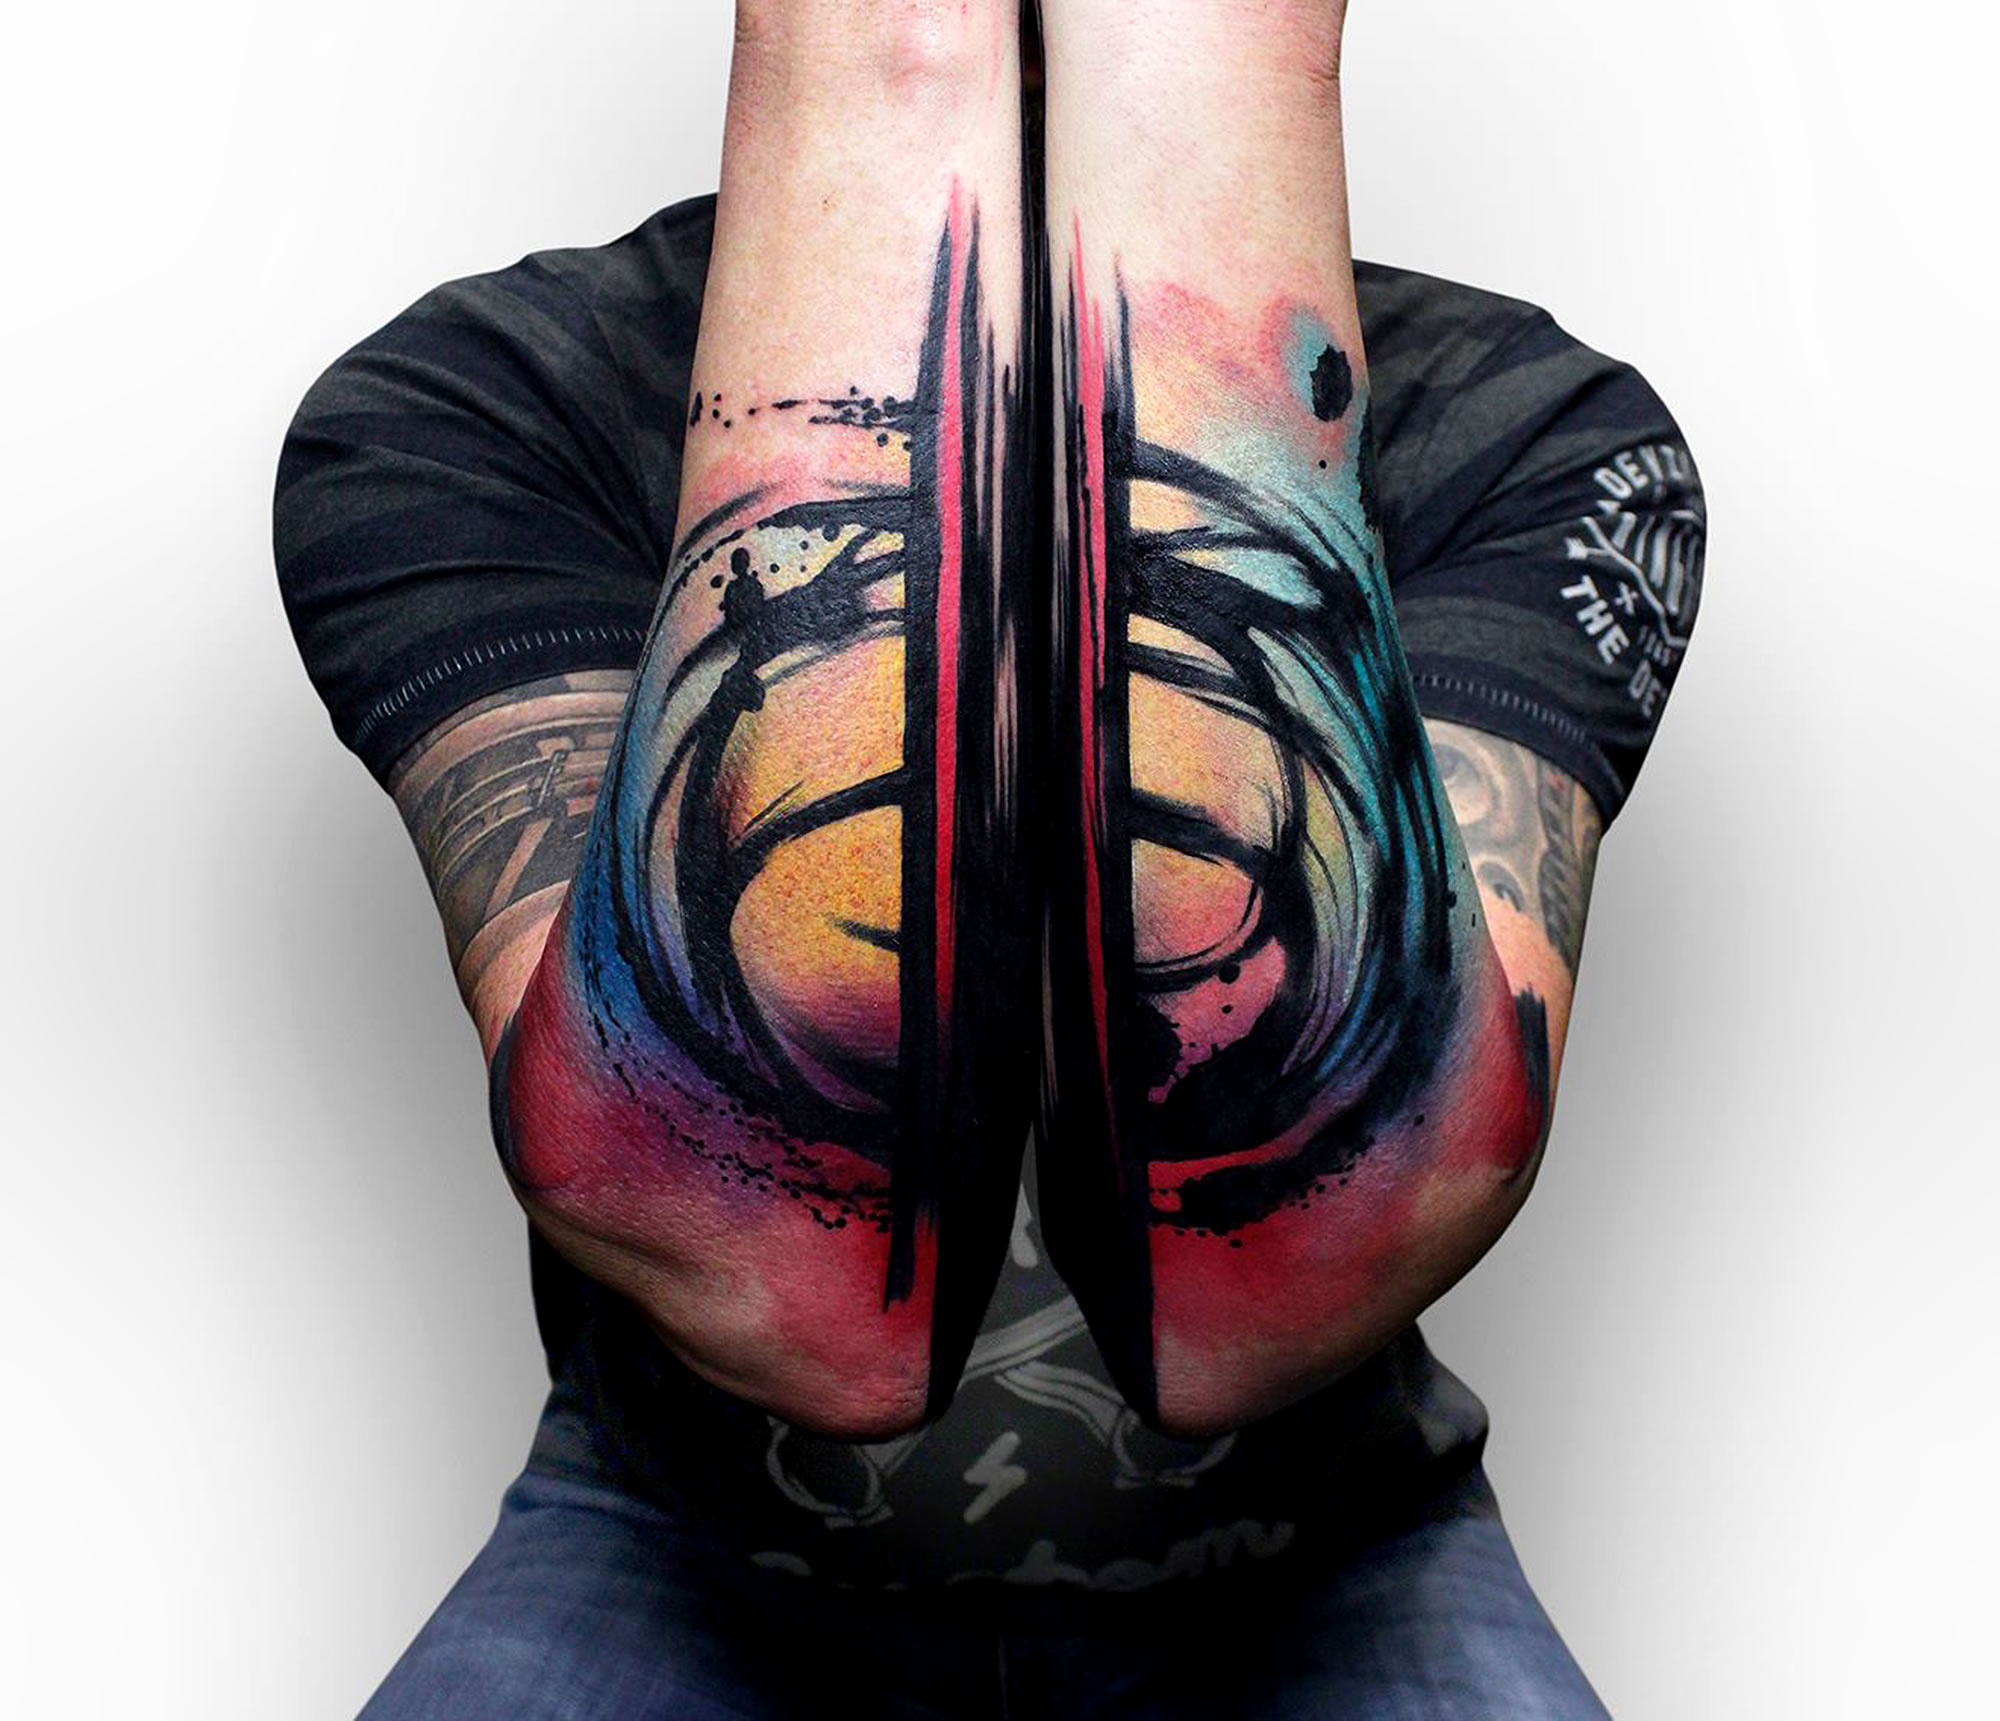 diptych tattoo on arms by szymon gdowicz